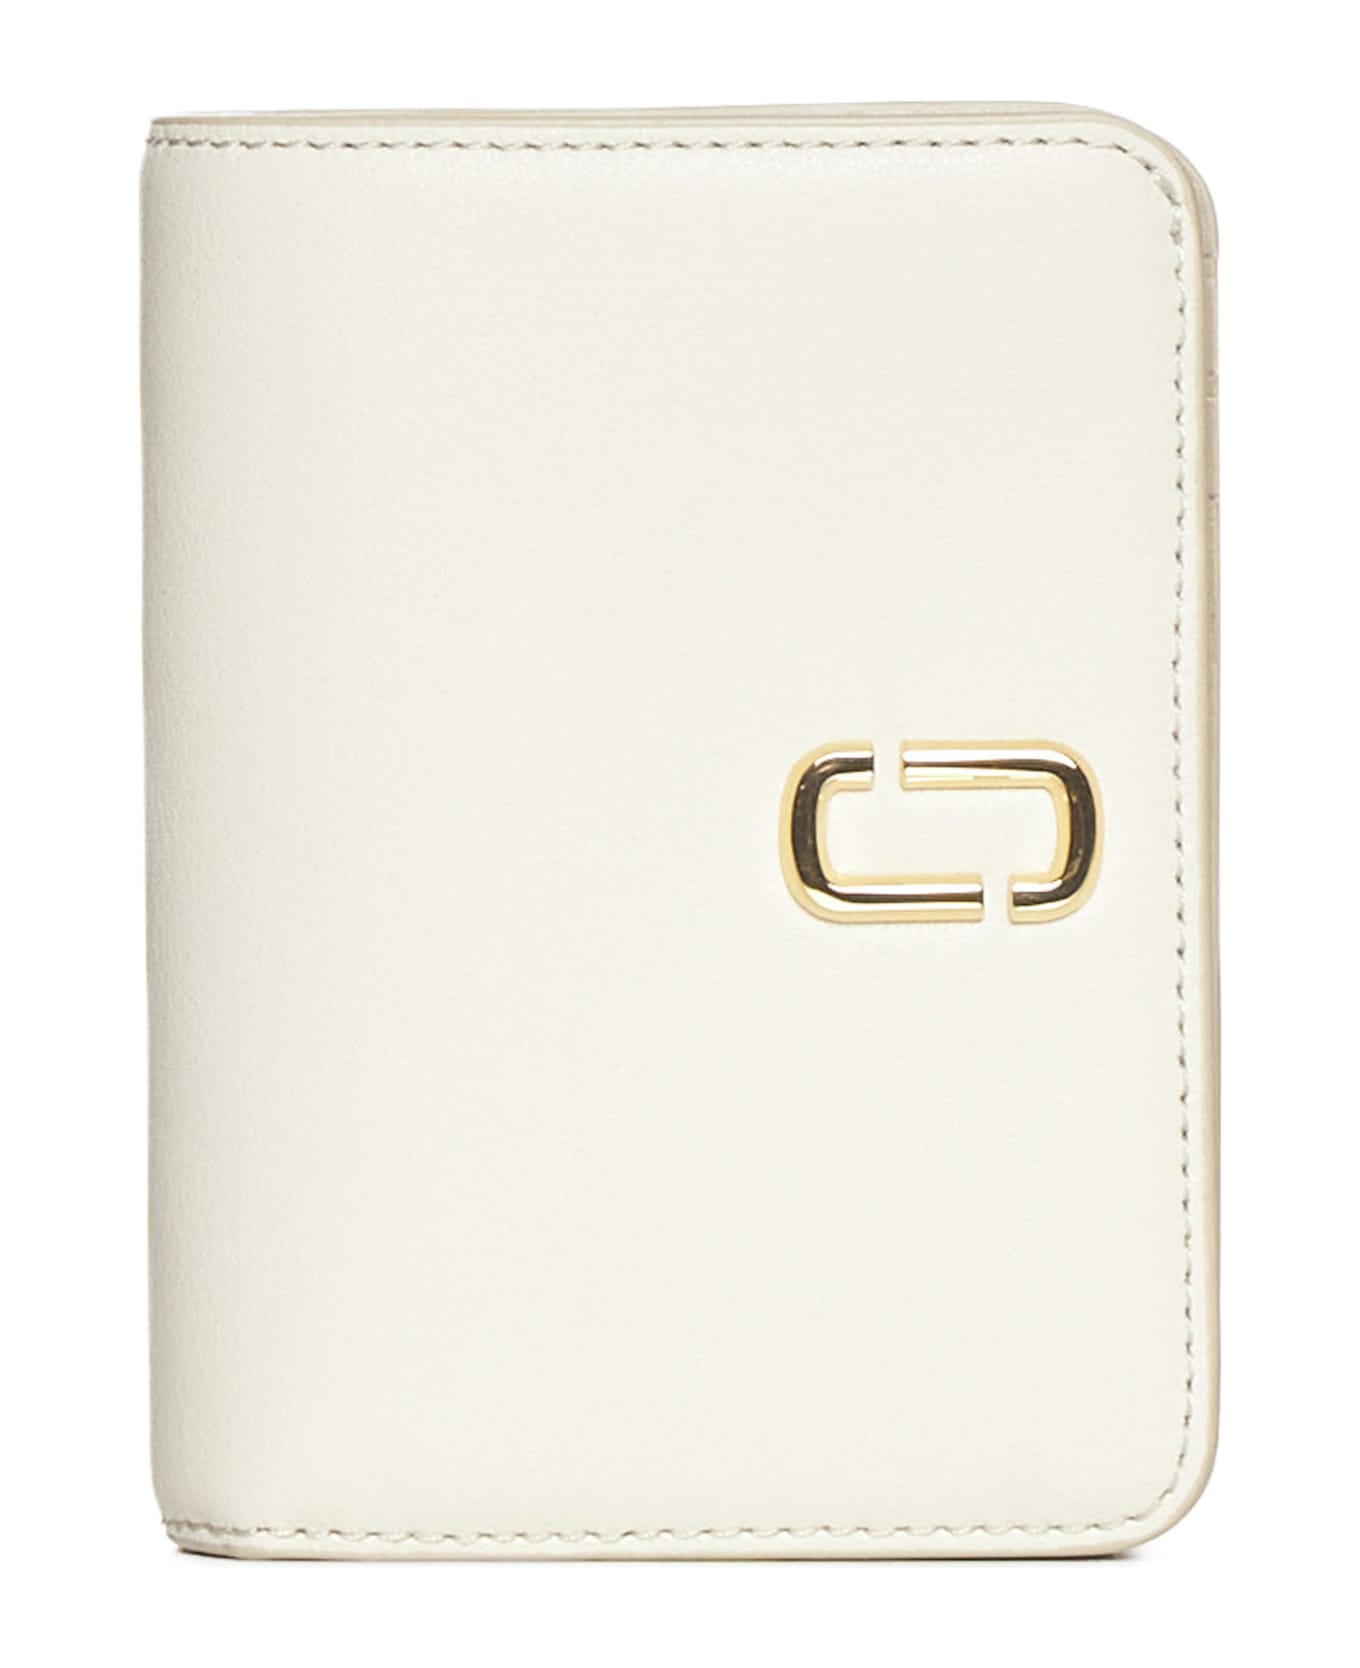 Marc Jacobs Mini Compact Wallet The J Marc - Cloud white